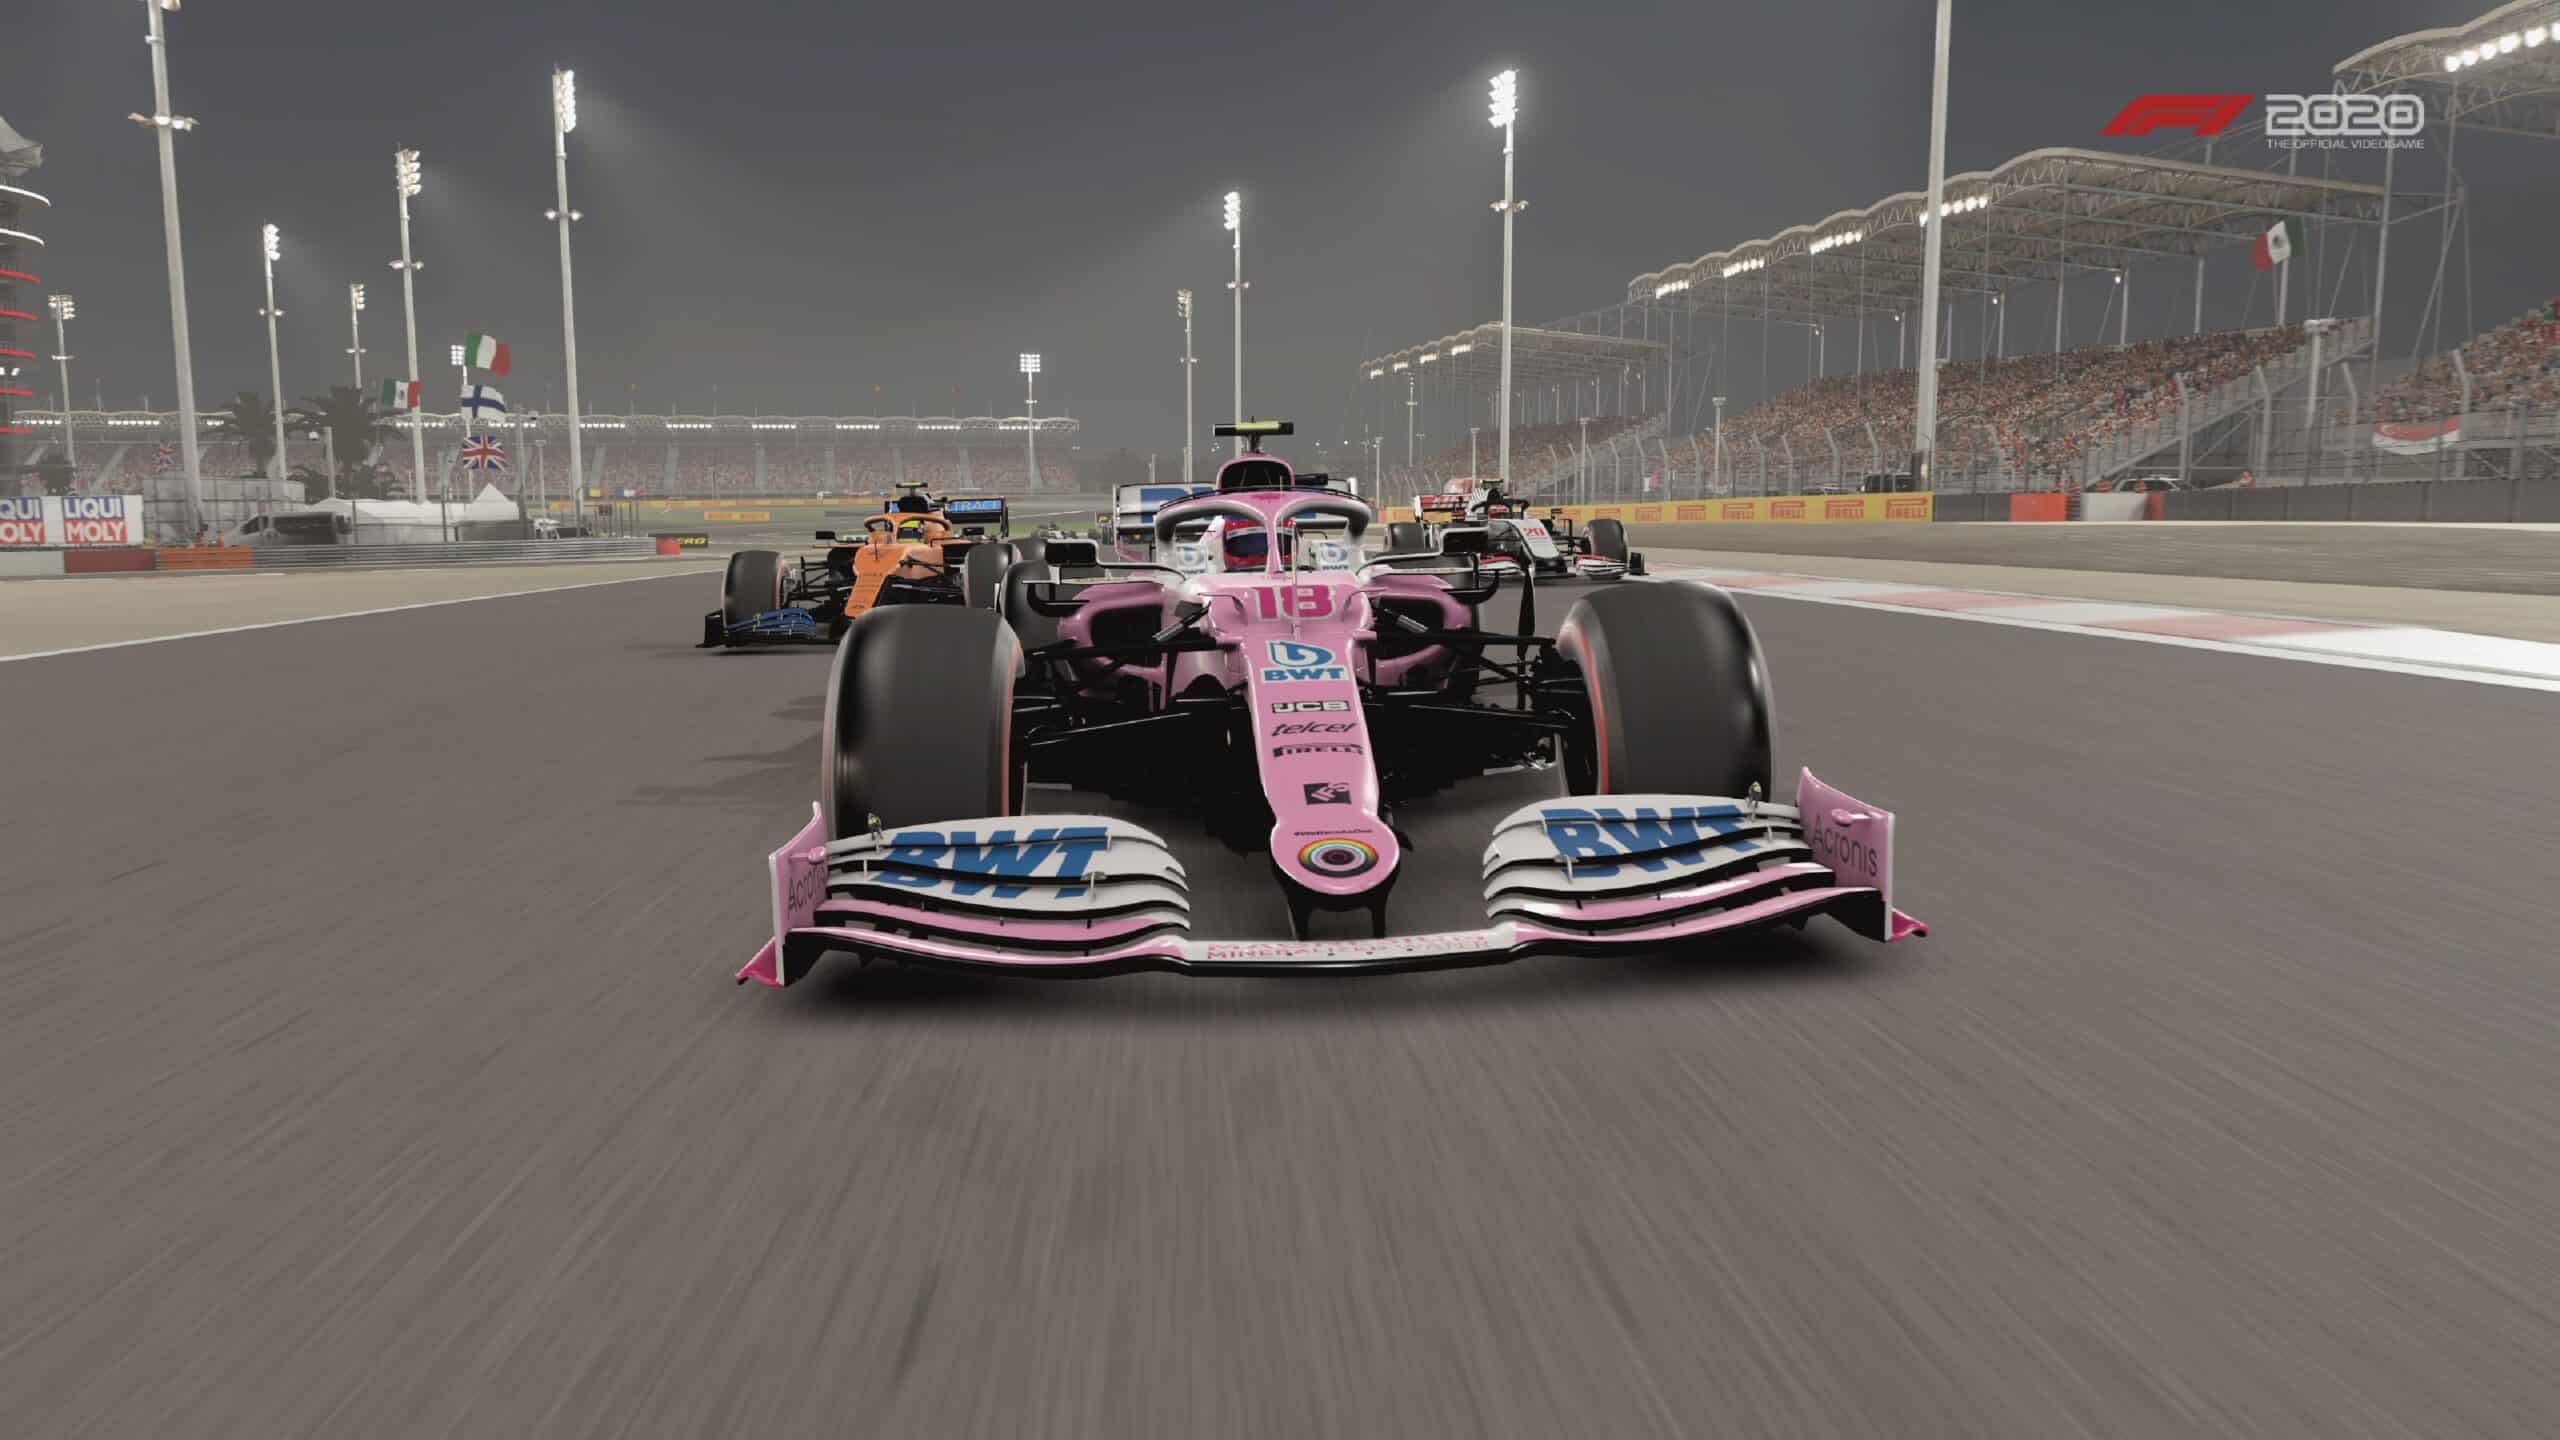 F1 2020 v1.17 Bahrain update